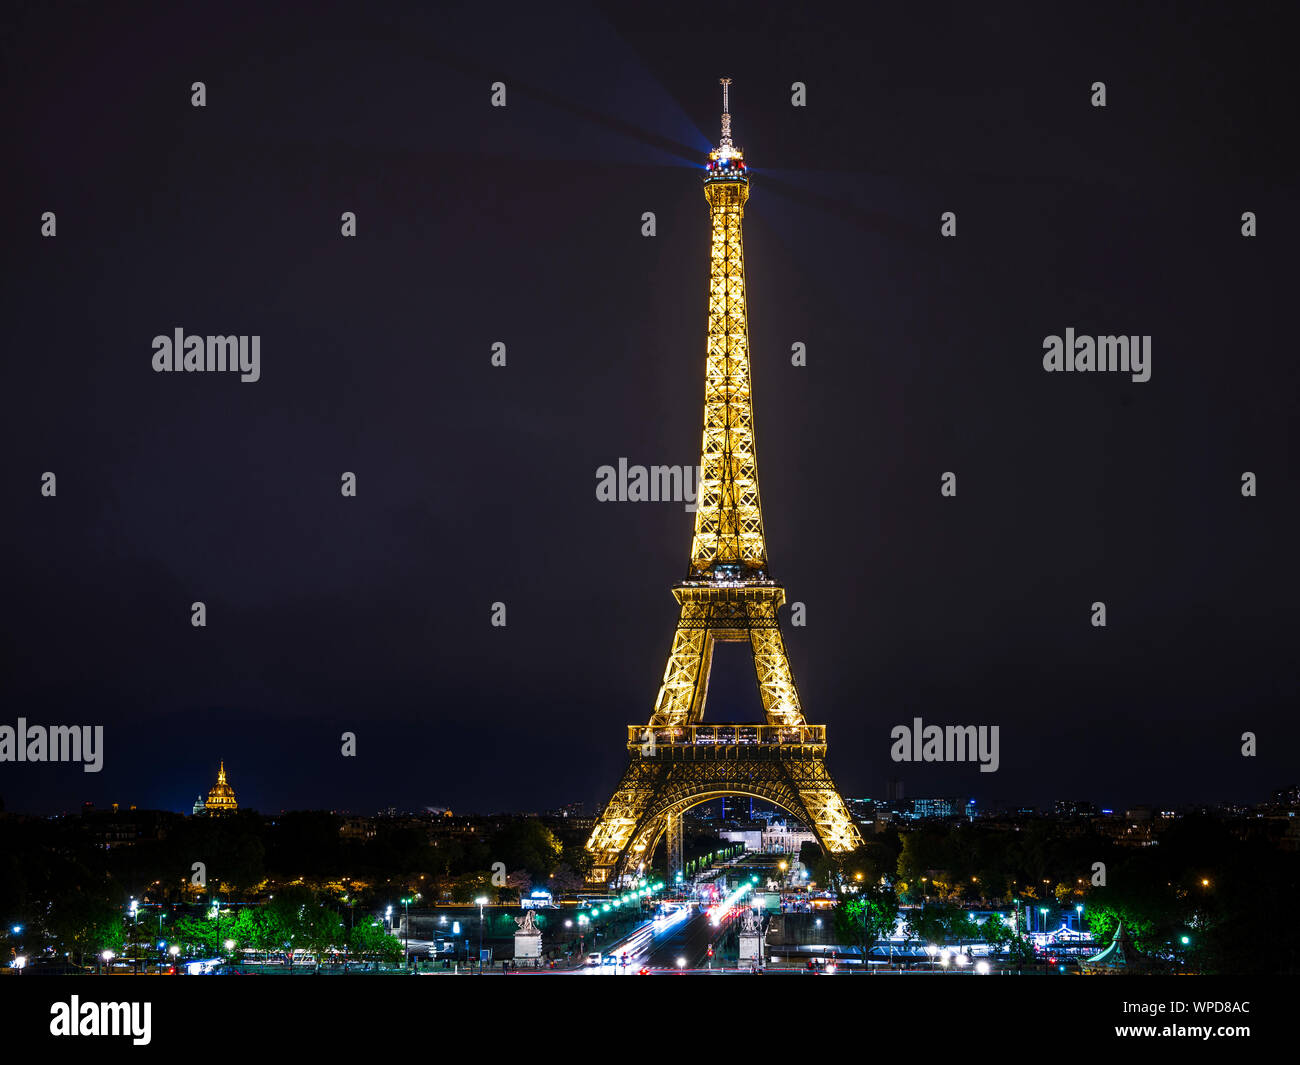 La fierté des Parisiens, la Tour Eiffel avec des lumières scintillantes comme un phare s'élève au-dessus des villes et montre le chemin pour les touristes du t Banque D'Images